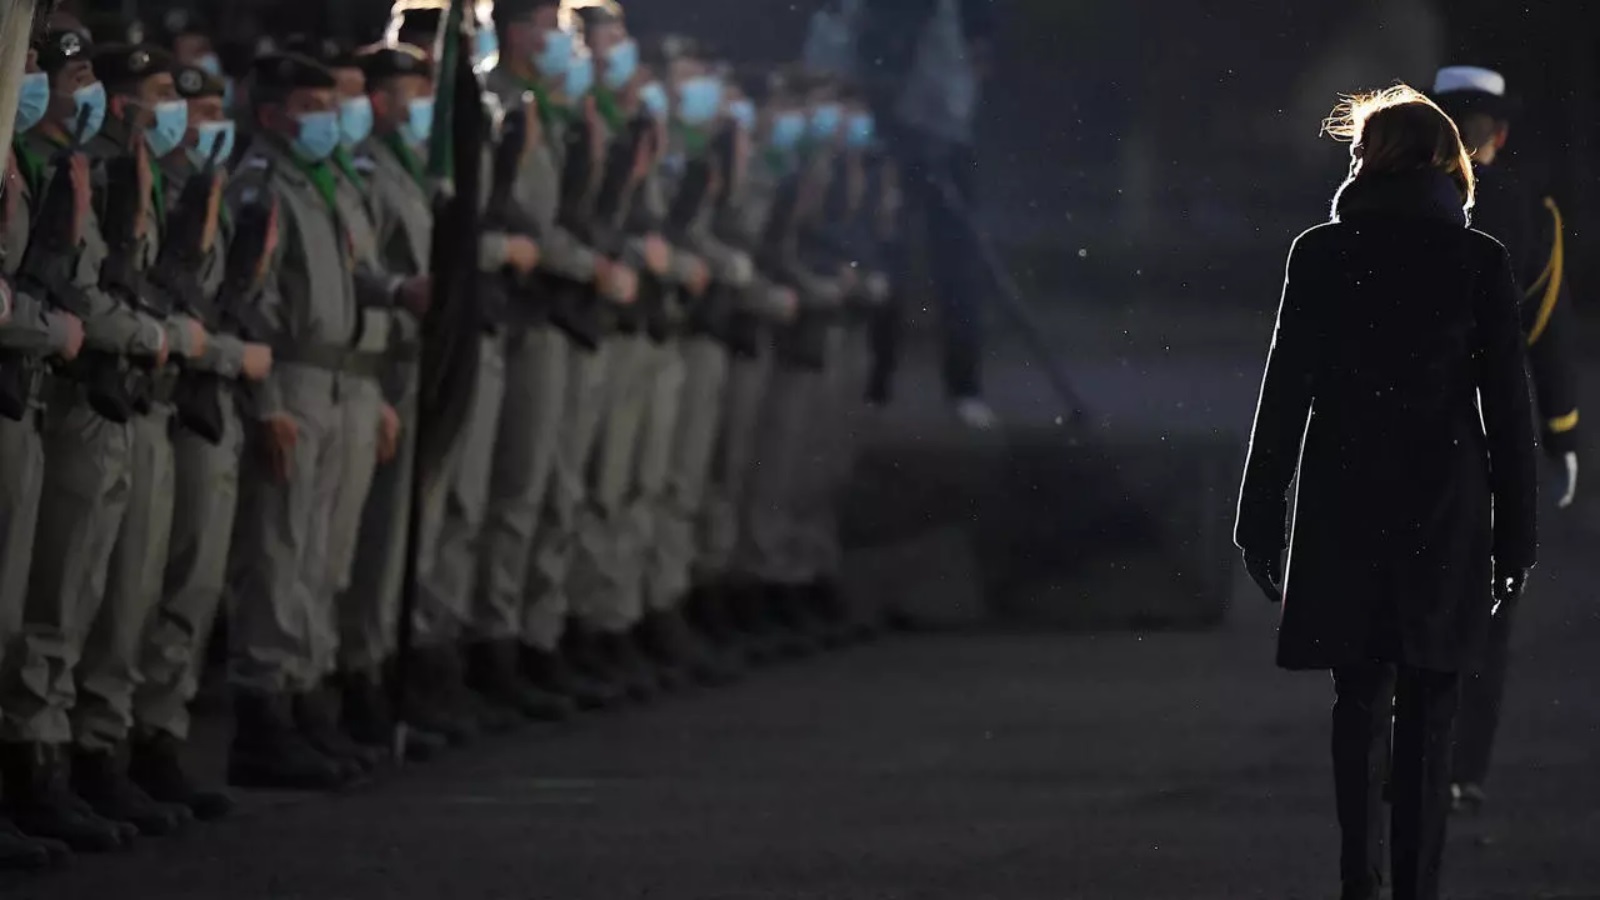 وزيرة الجيوش الفرنسية فلورانس بارلي تستعرض قوة عسكرية خلال حفل تكريم جنديين فرنسيين قتلا في مالي في 2 كانون الثاني/يناير 2021، في هاغينو شرقي فرنسا 8 يناير 